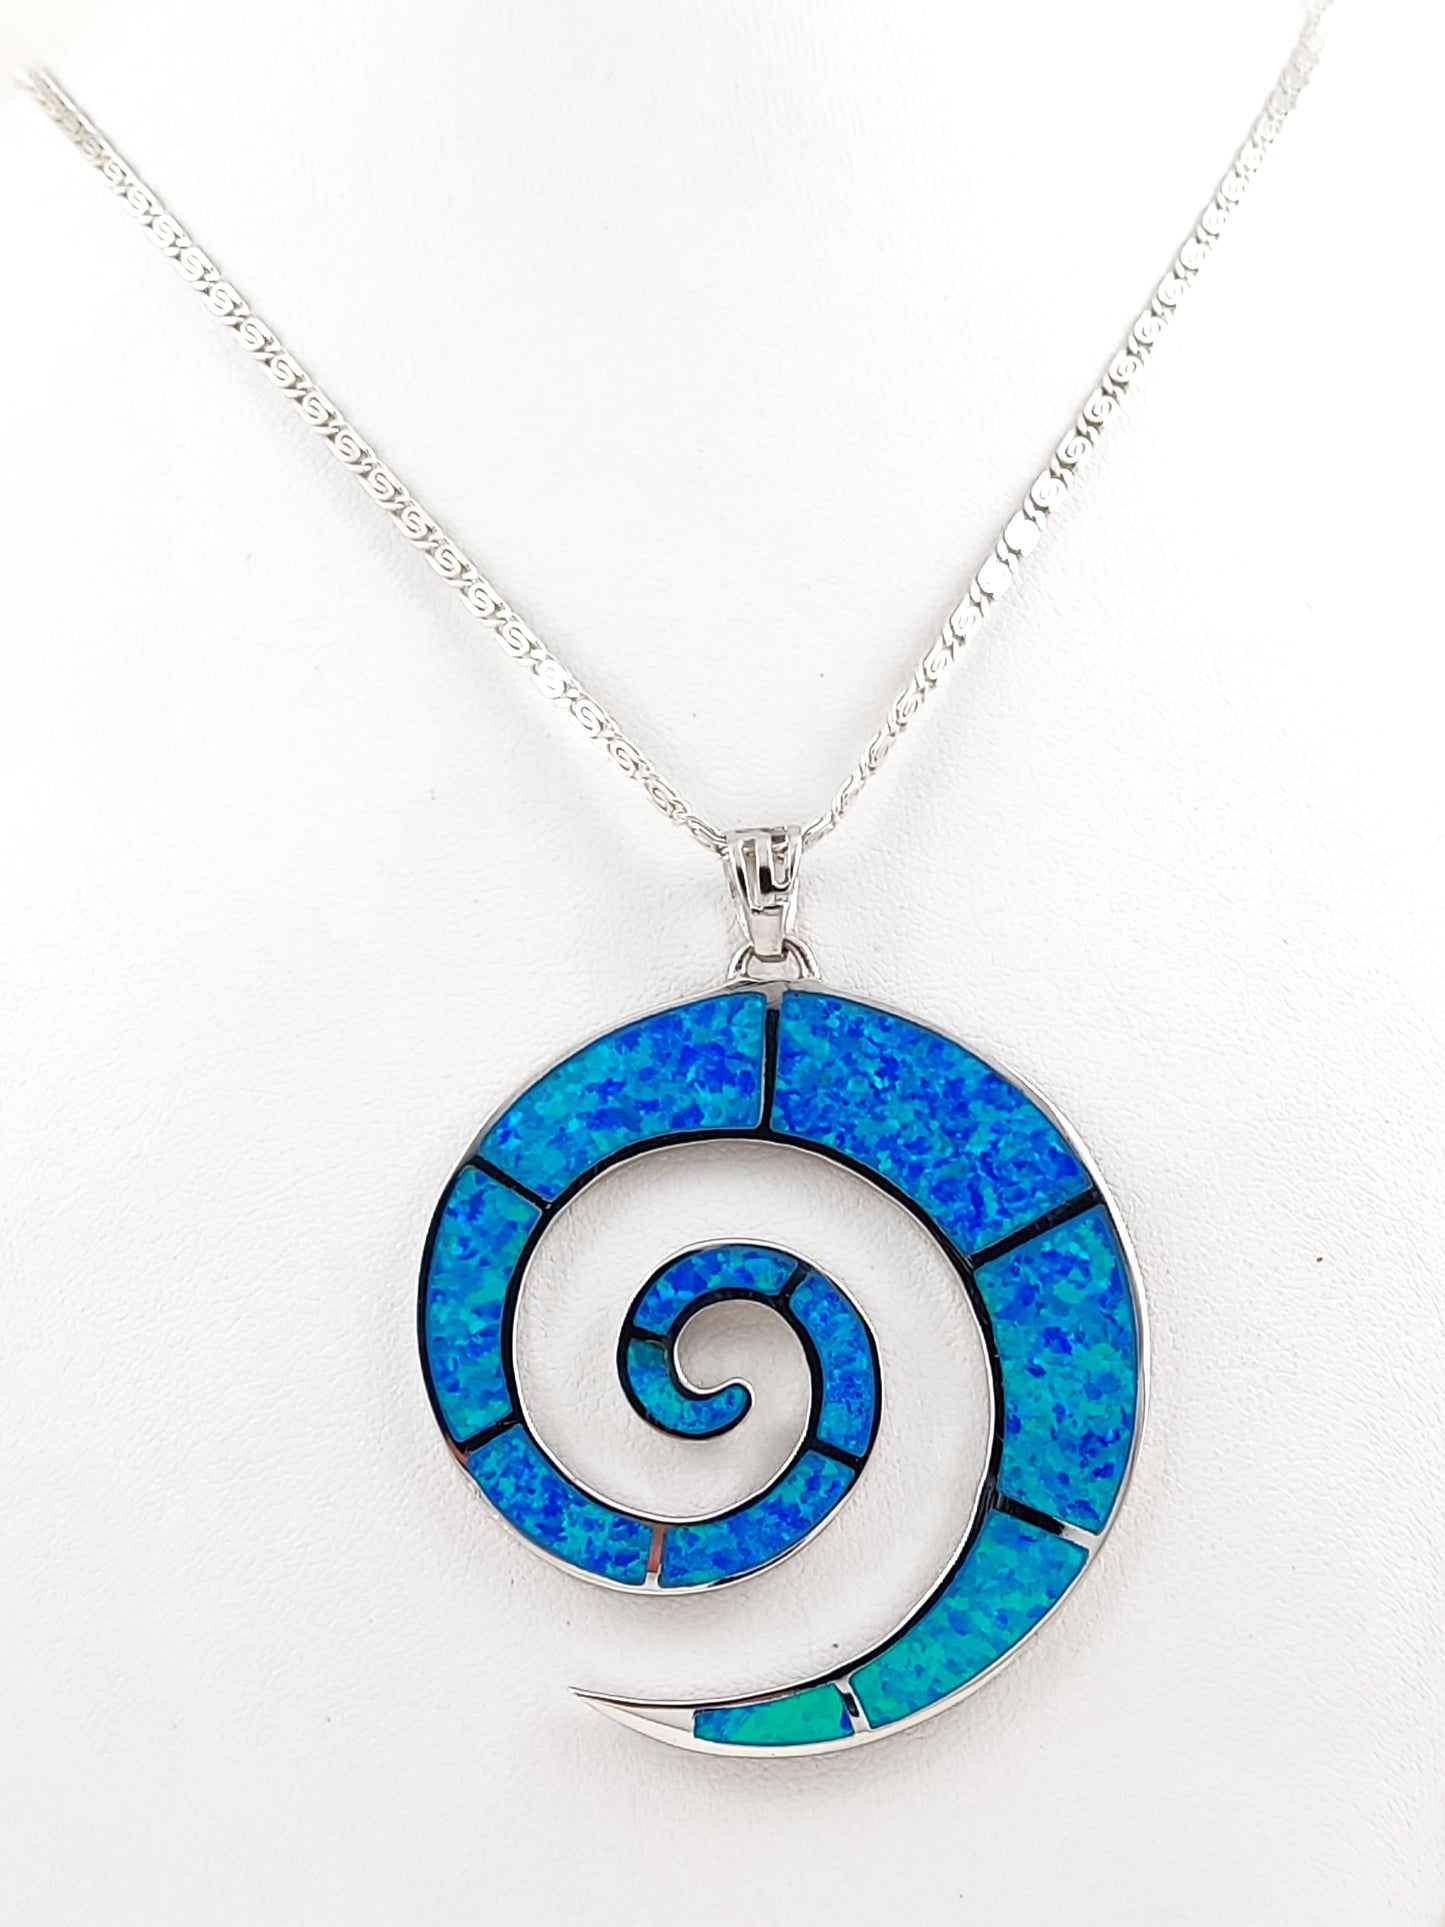 Collier avec pendentif en argent et opale bleue en spirale grecque, grand collier de 50 mm 